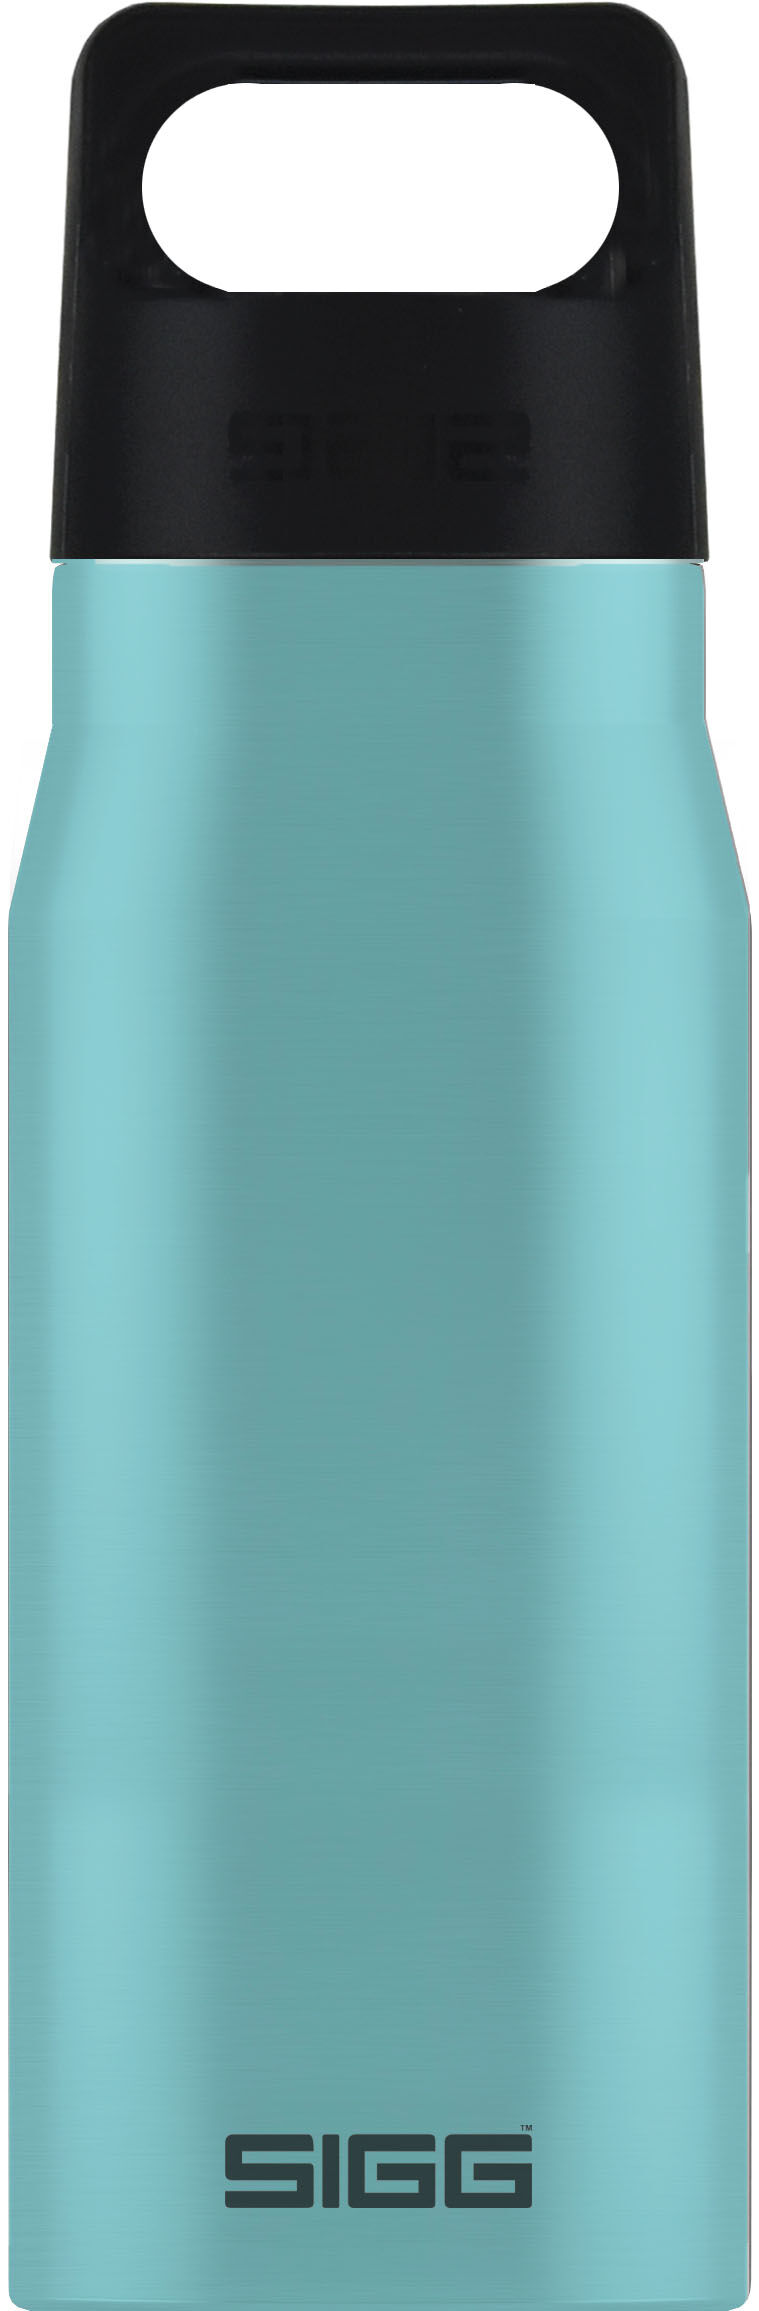 Sigg Explorer 0.75 L - Water bottle